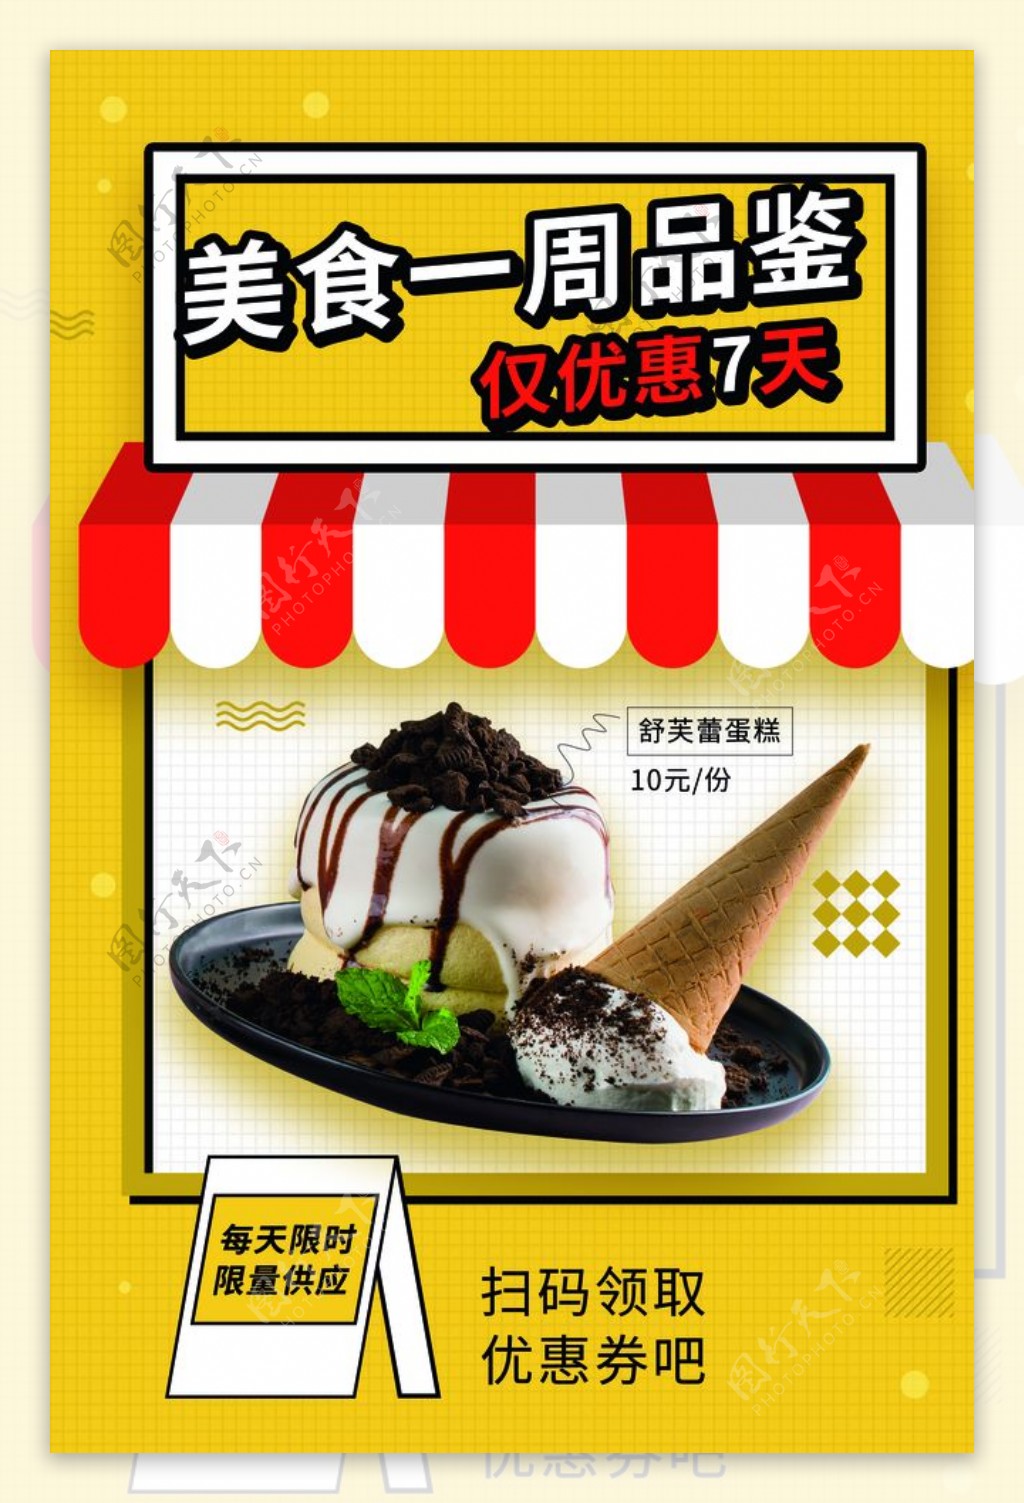 冰淇淋夏日促销活动宣传海报素材